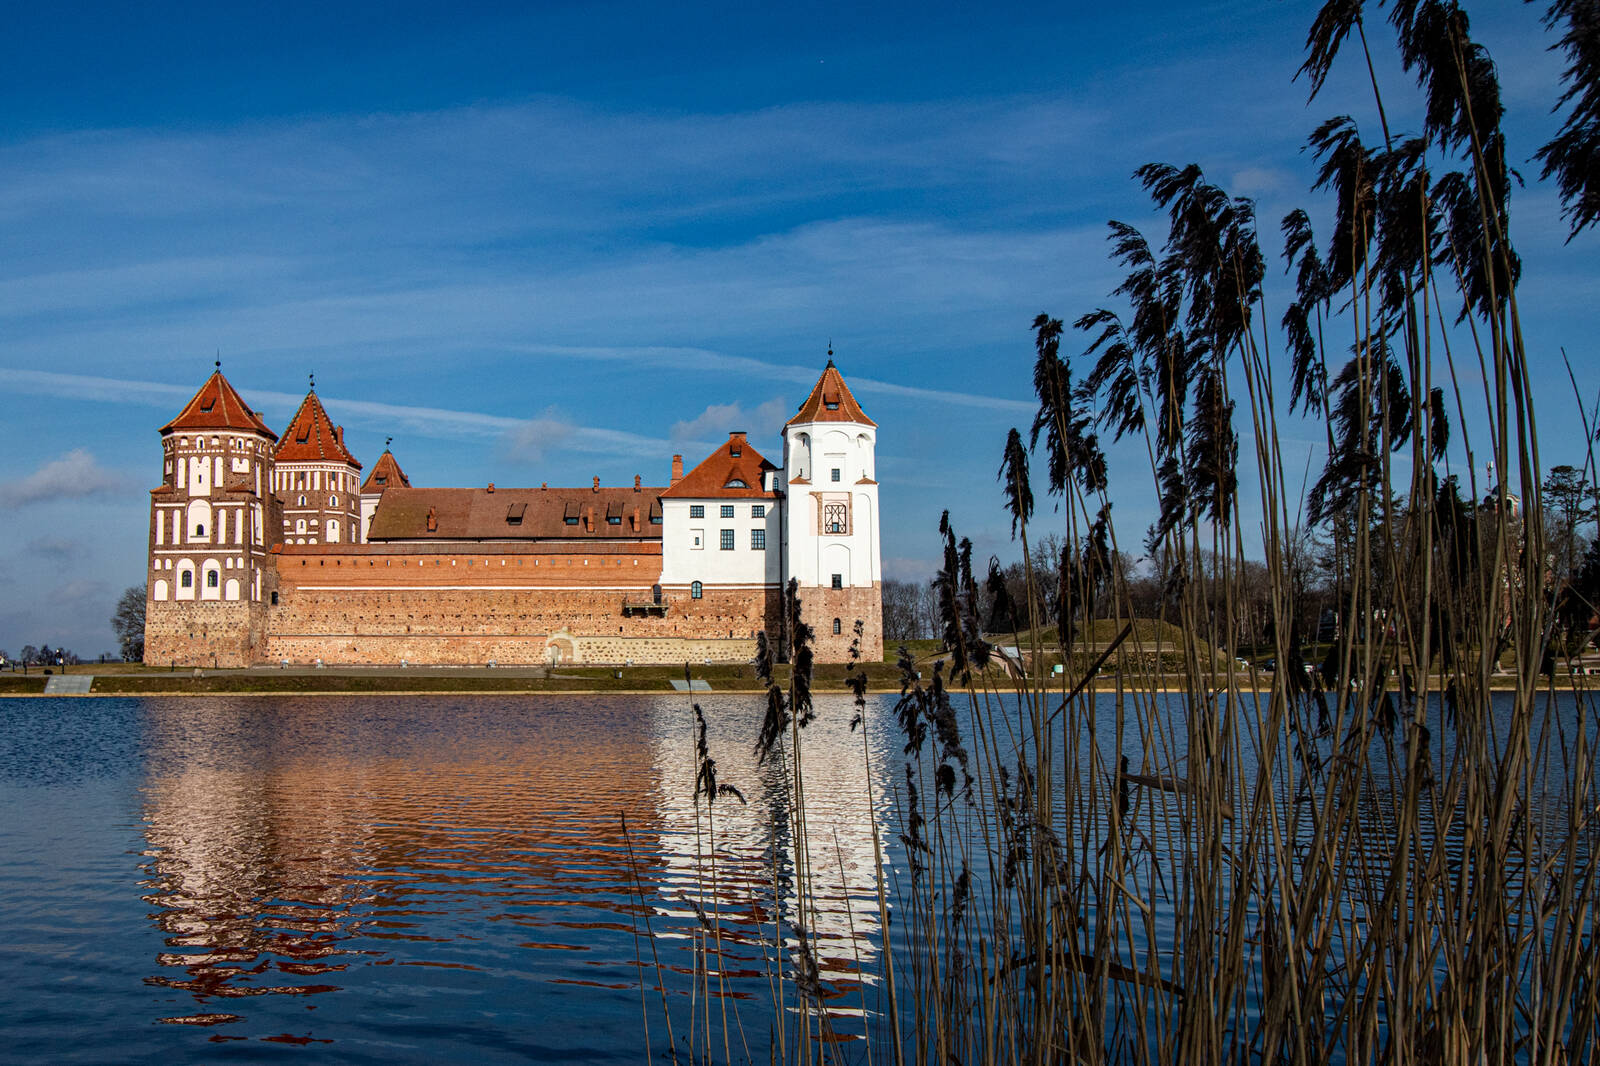 Image of Mir Castle, Belarus by Janina Wilde